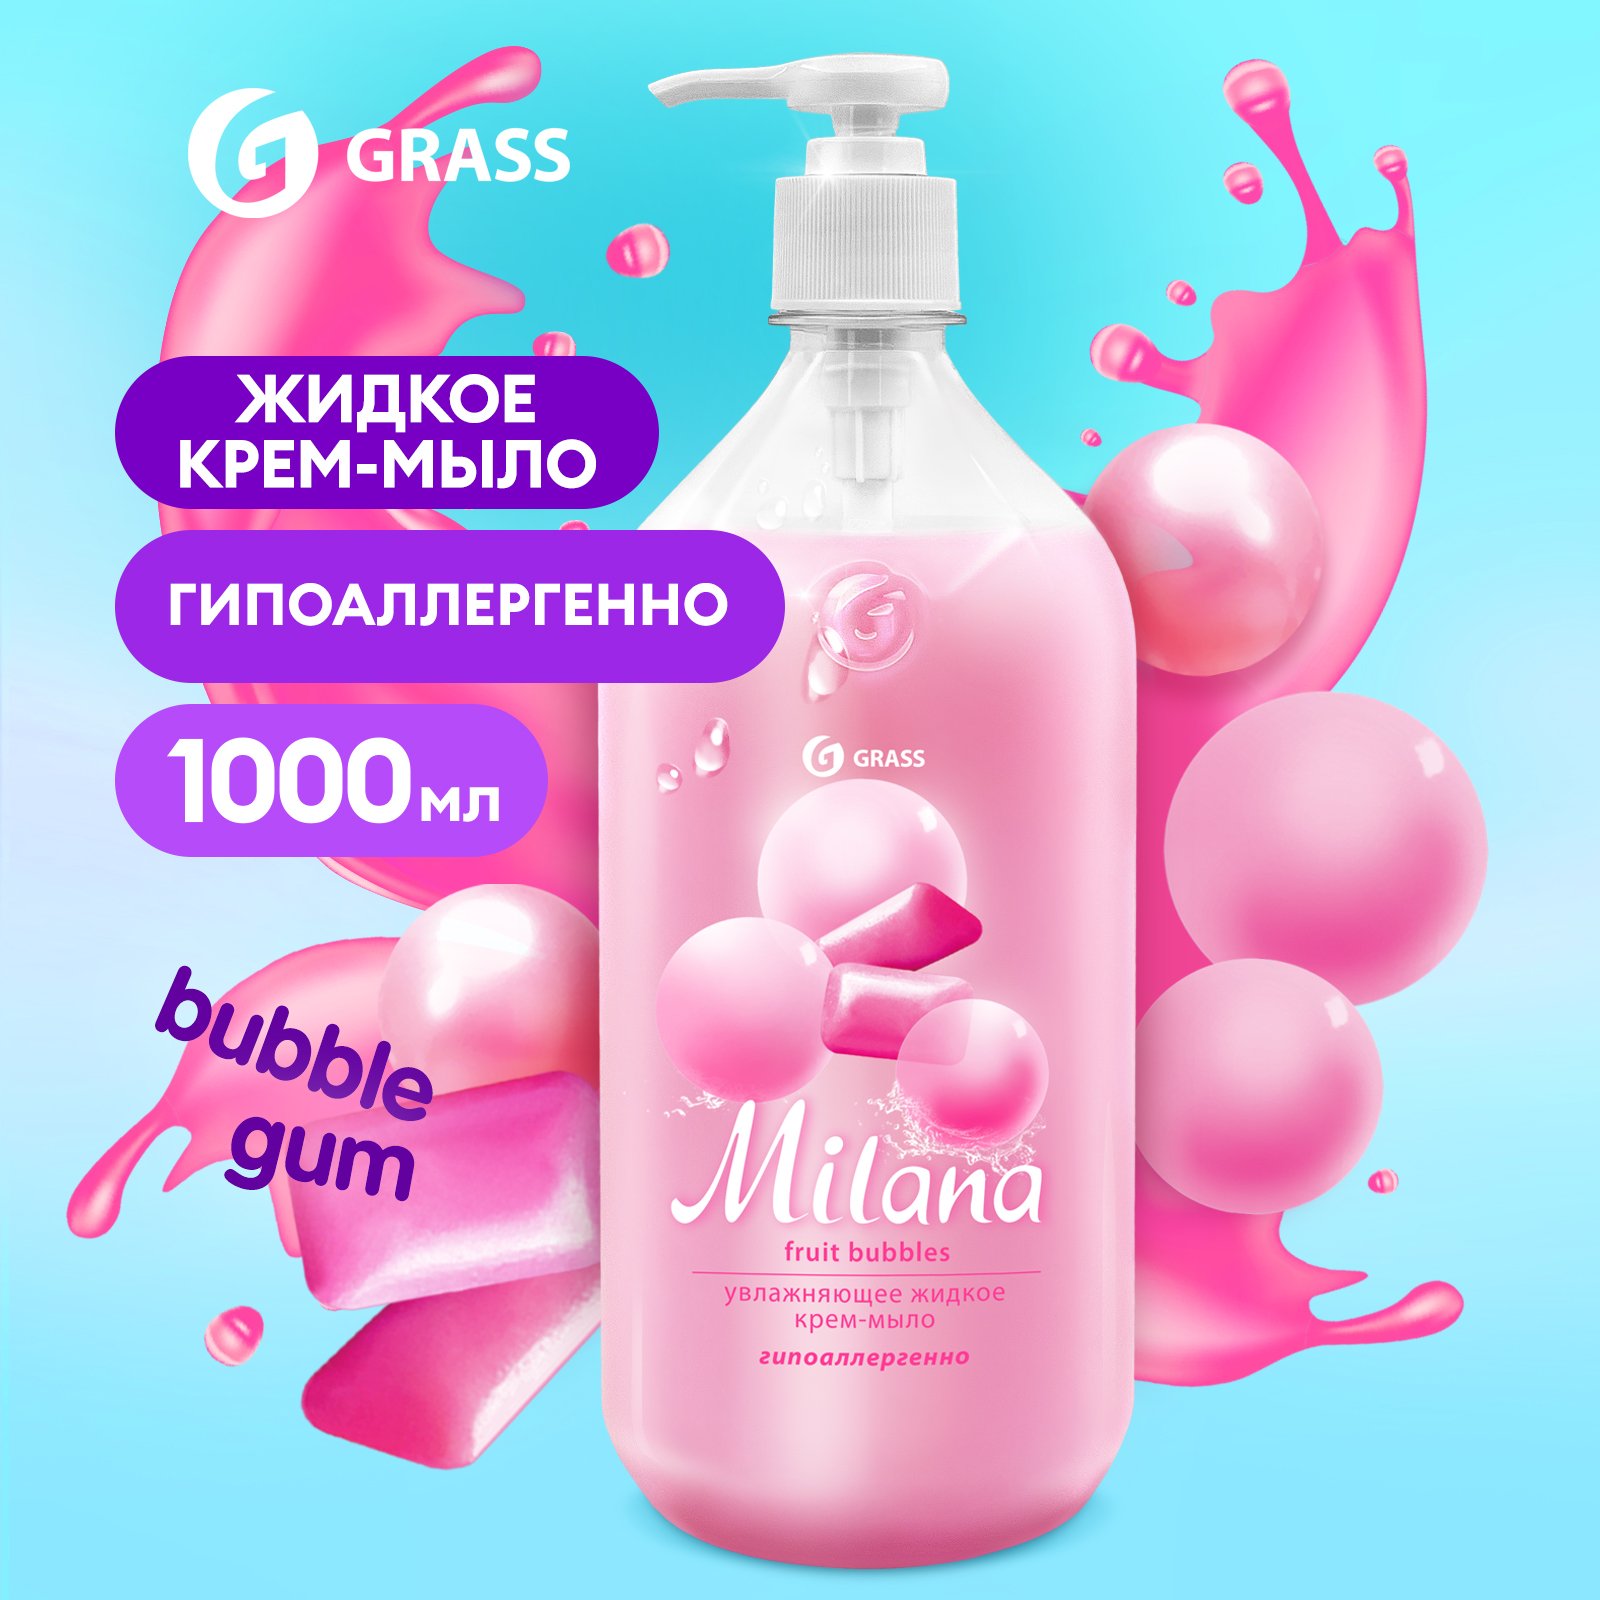 Мыло жидкое для рук Grass Milana Fruit Bubbles туалетное, густое, гипоаллергенное 1 л мыло grass milana patchouli